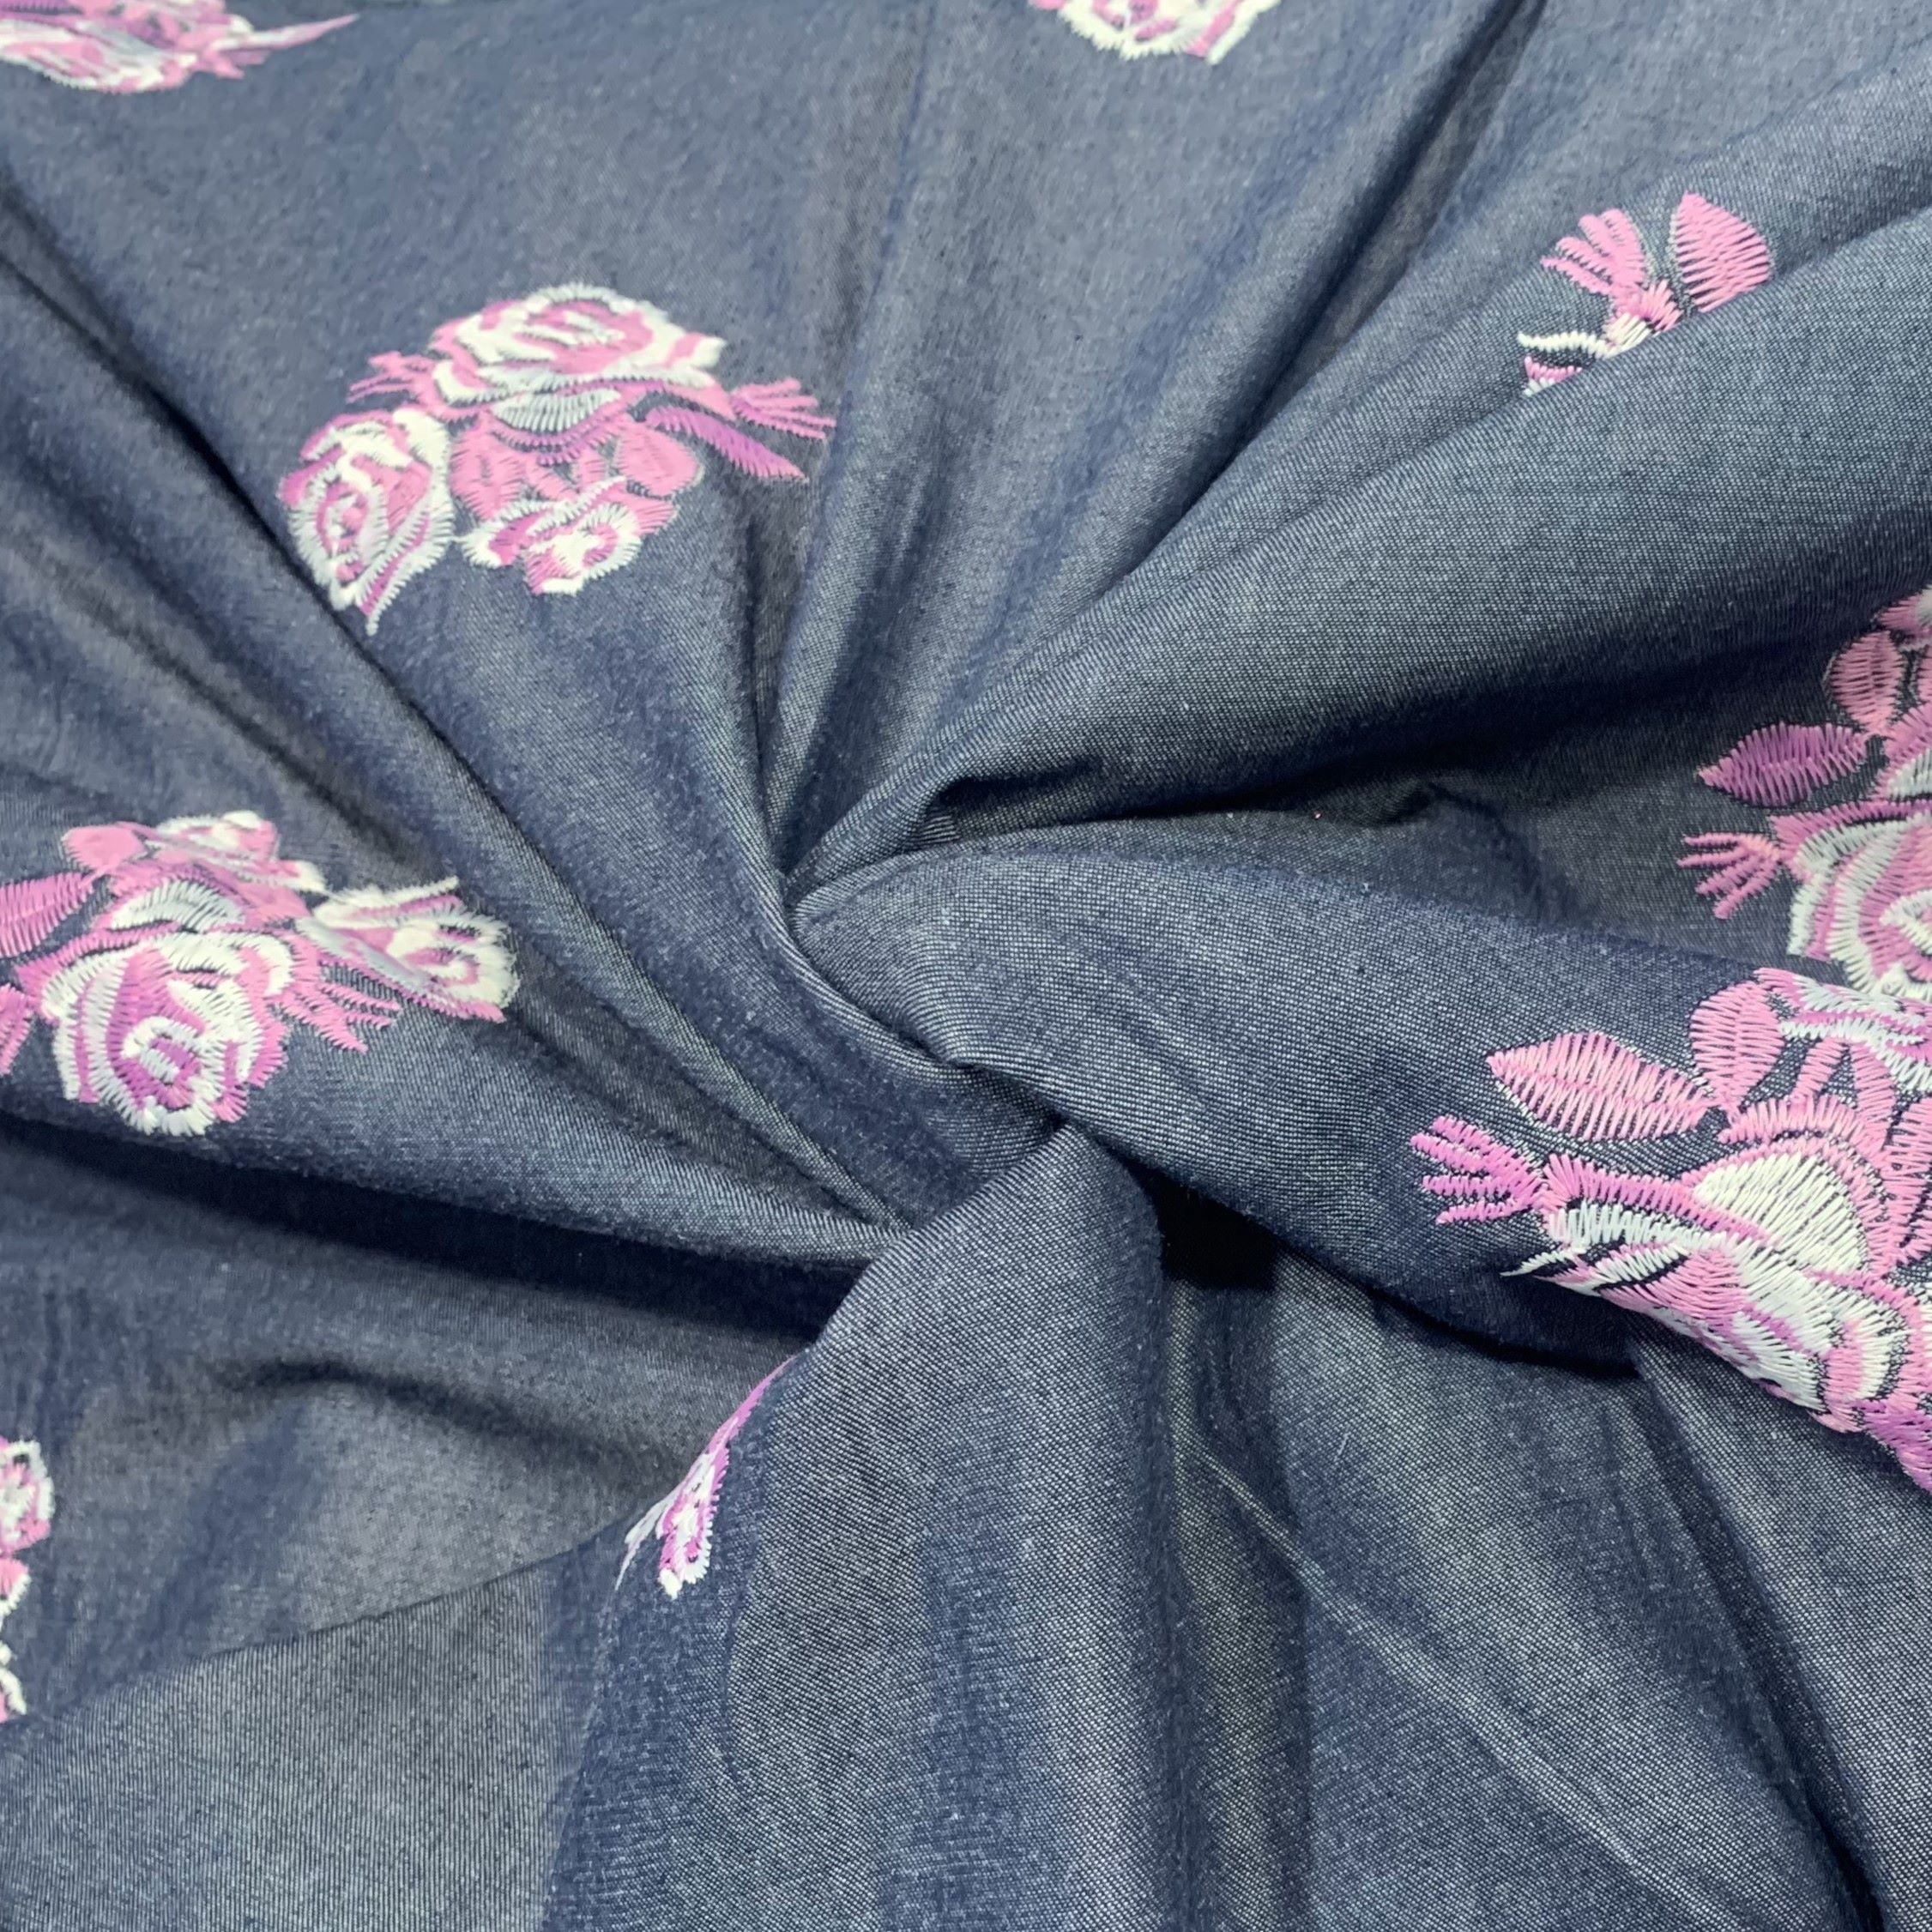 Tecido Mescla Jeans Bordado Azul Escuro Desenho Mini Flores Pink - Empório dos Tecidos 